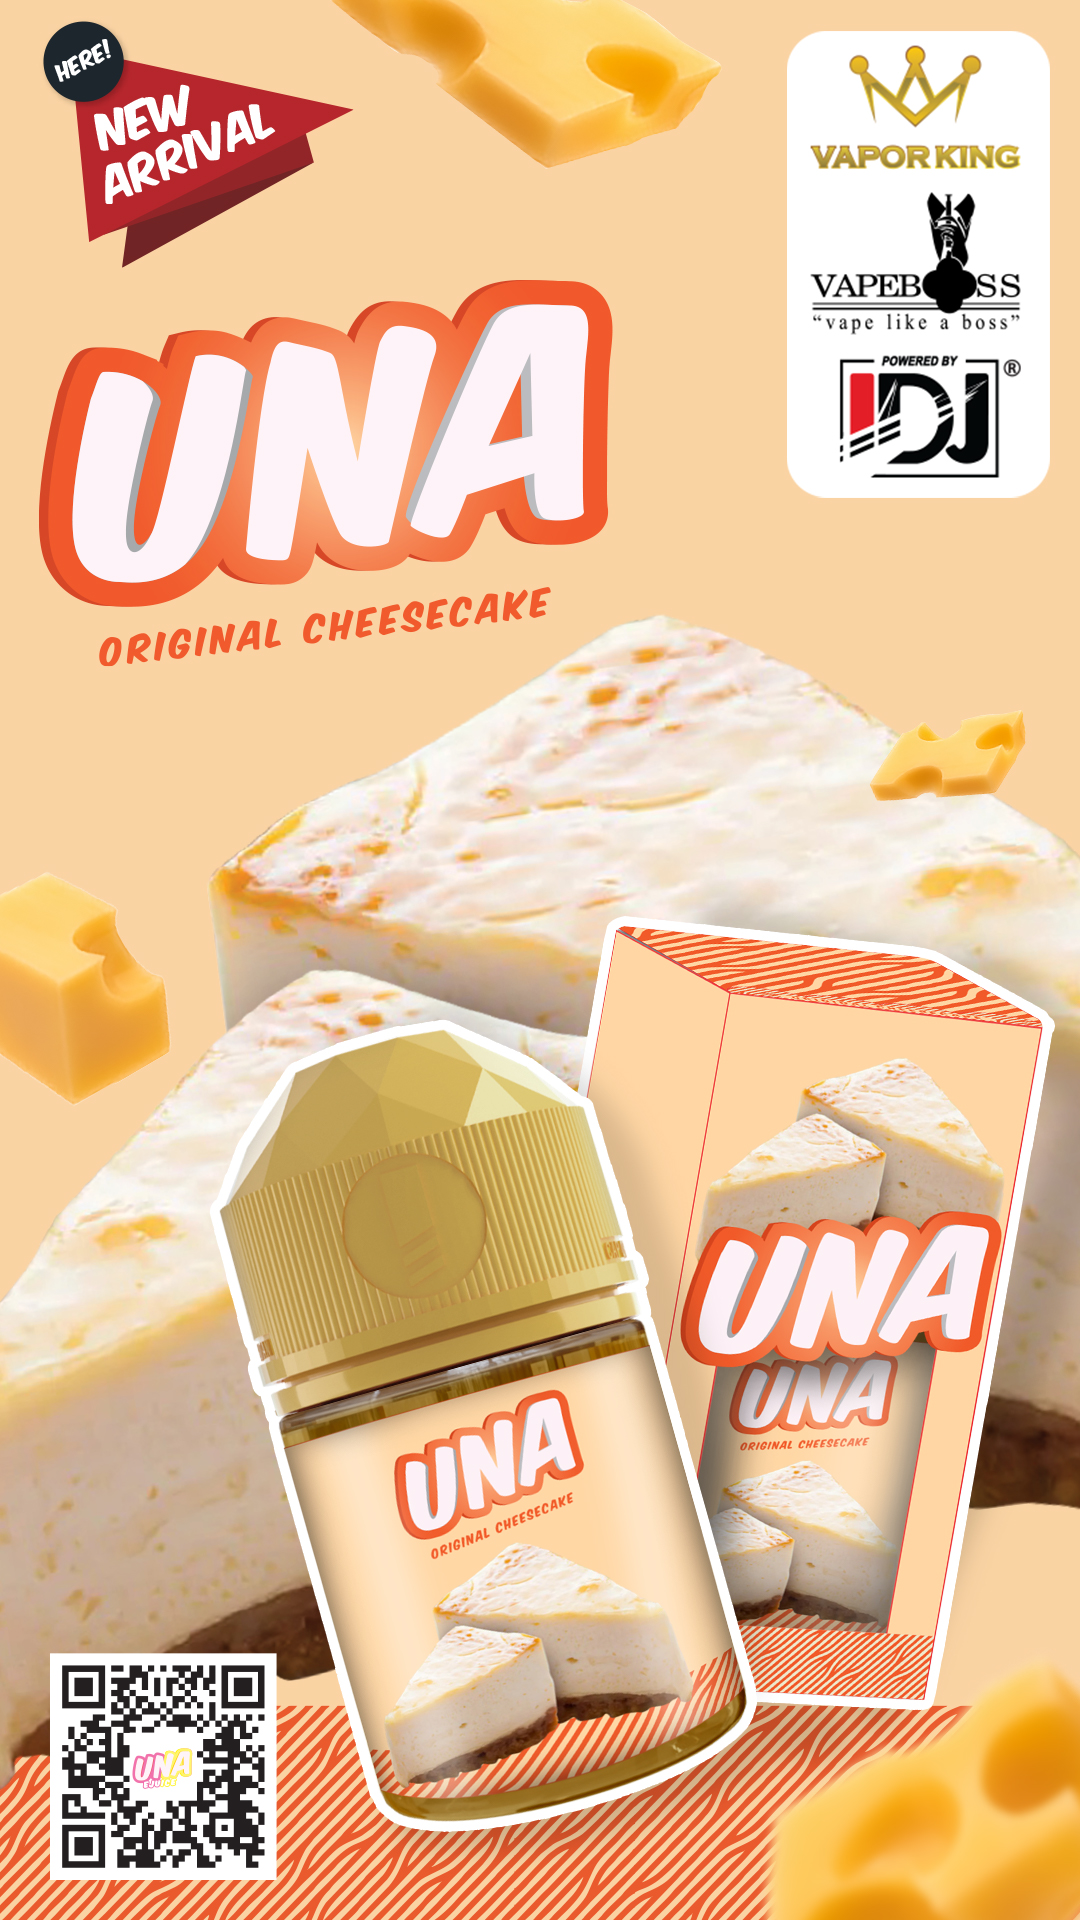 Liquid UNA Original Cheesecake - Liquid Vape Cheesecake